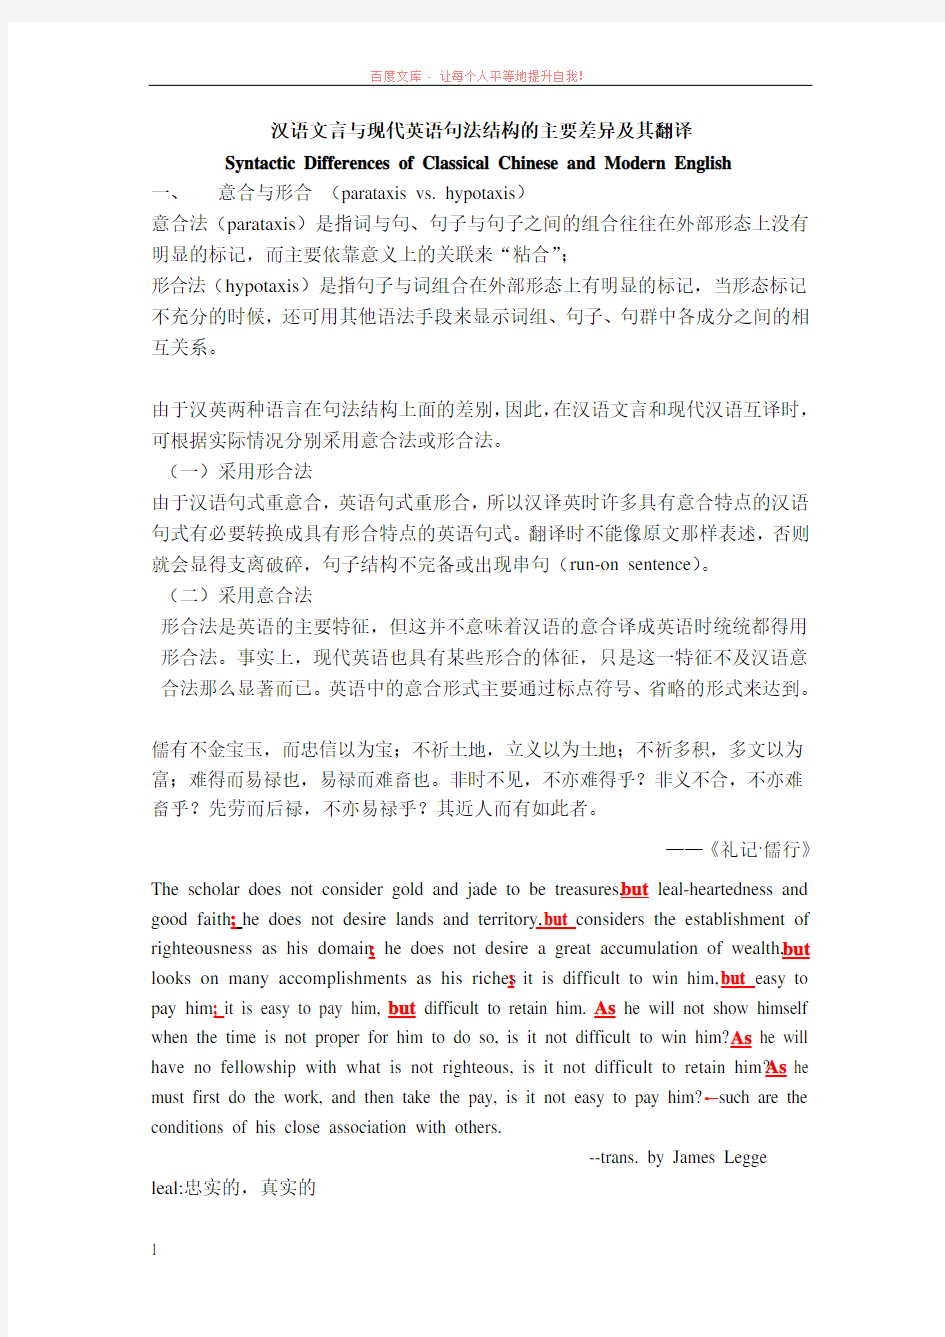 汉语文言与现代英语句法结构的主要差异及其翻译 (1)